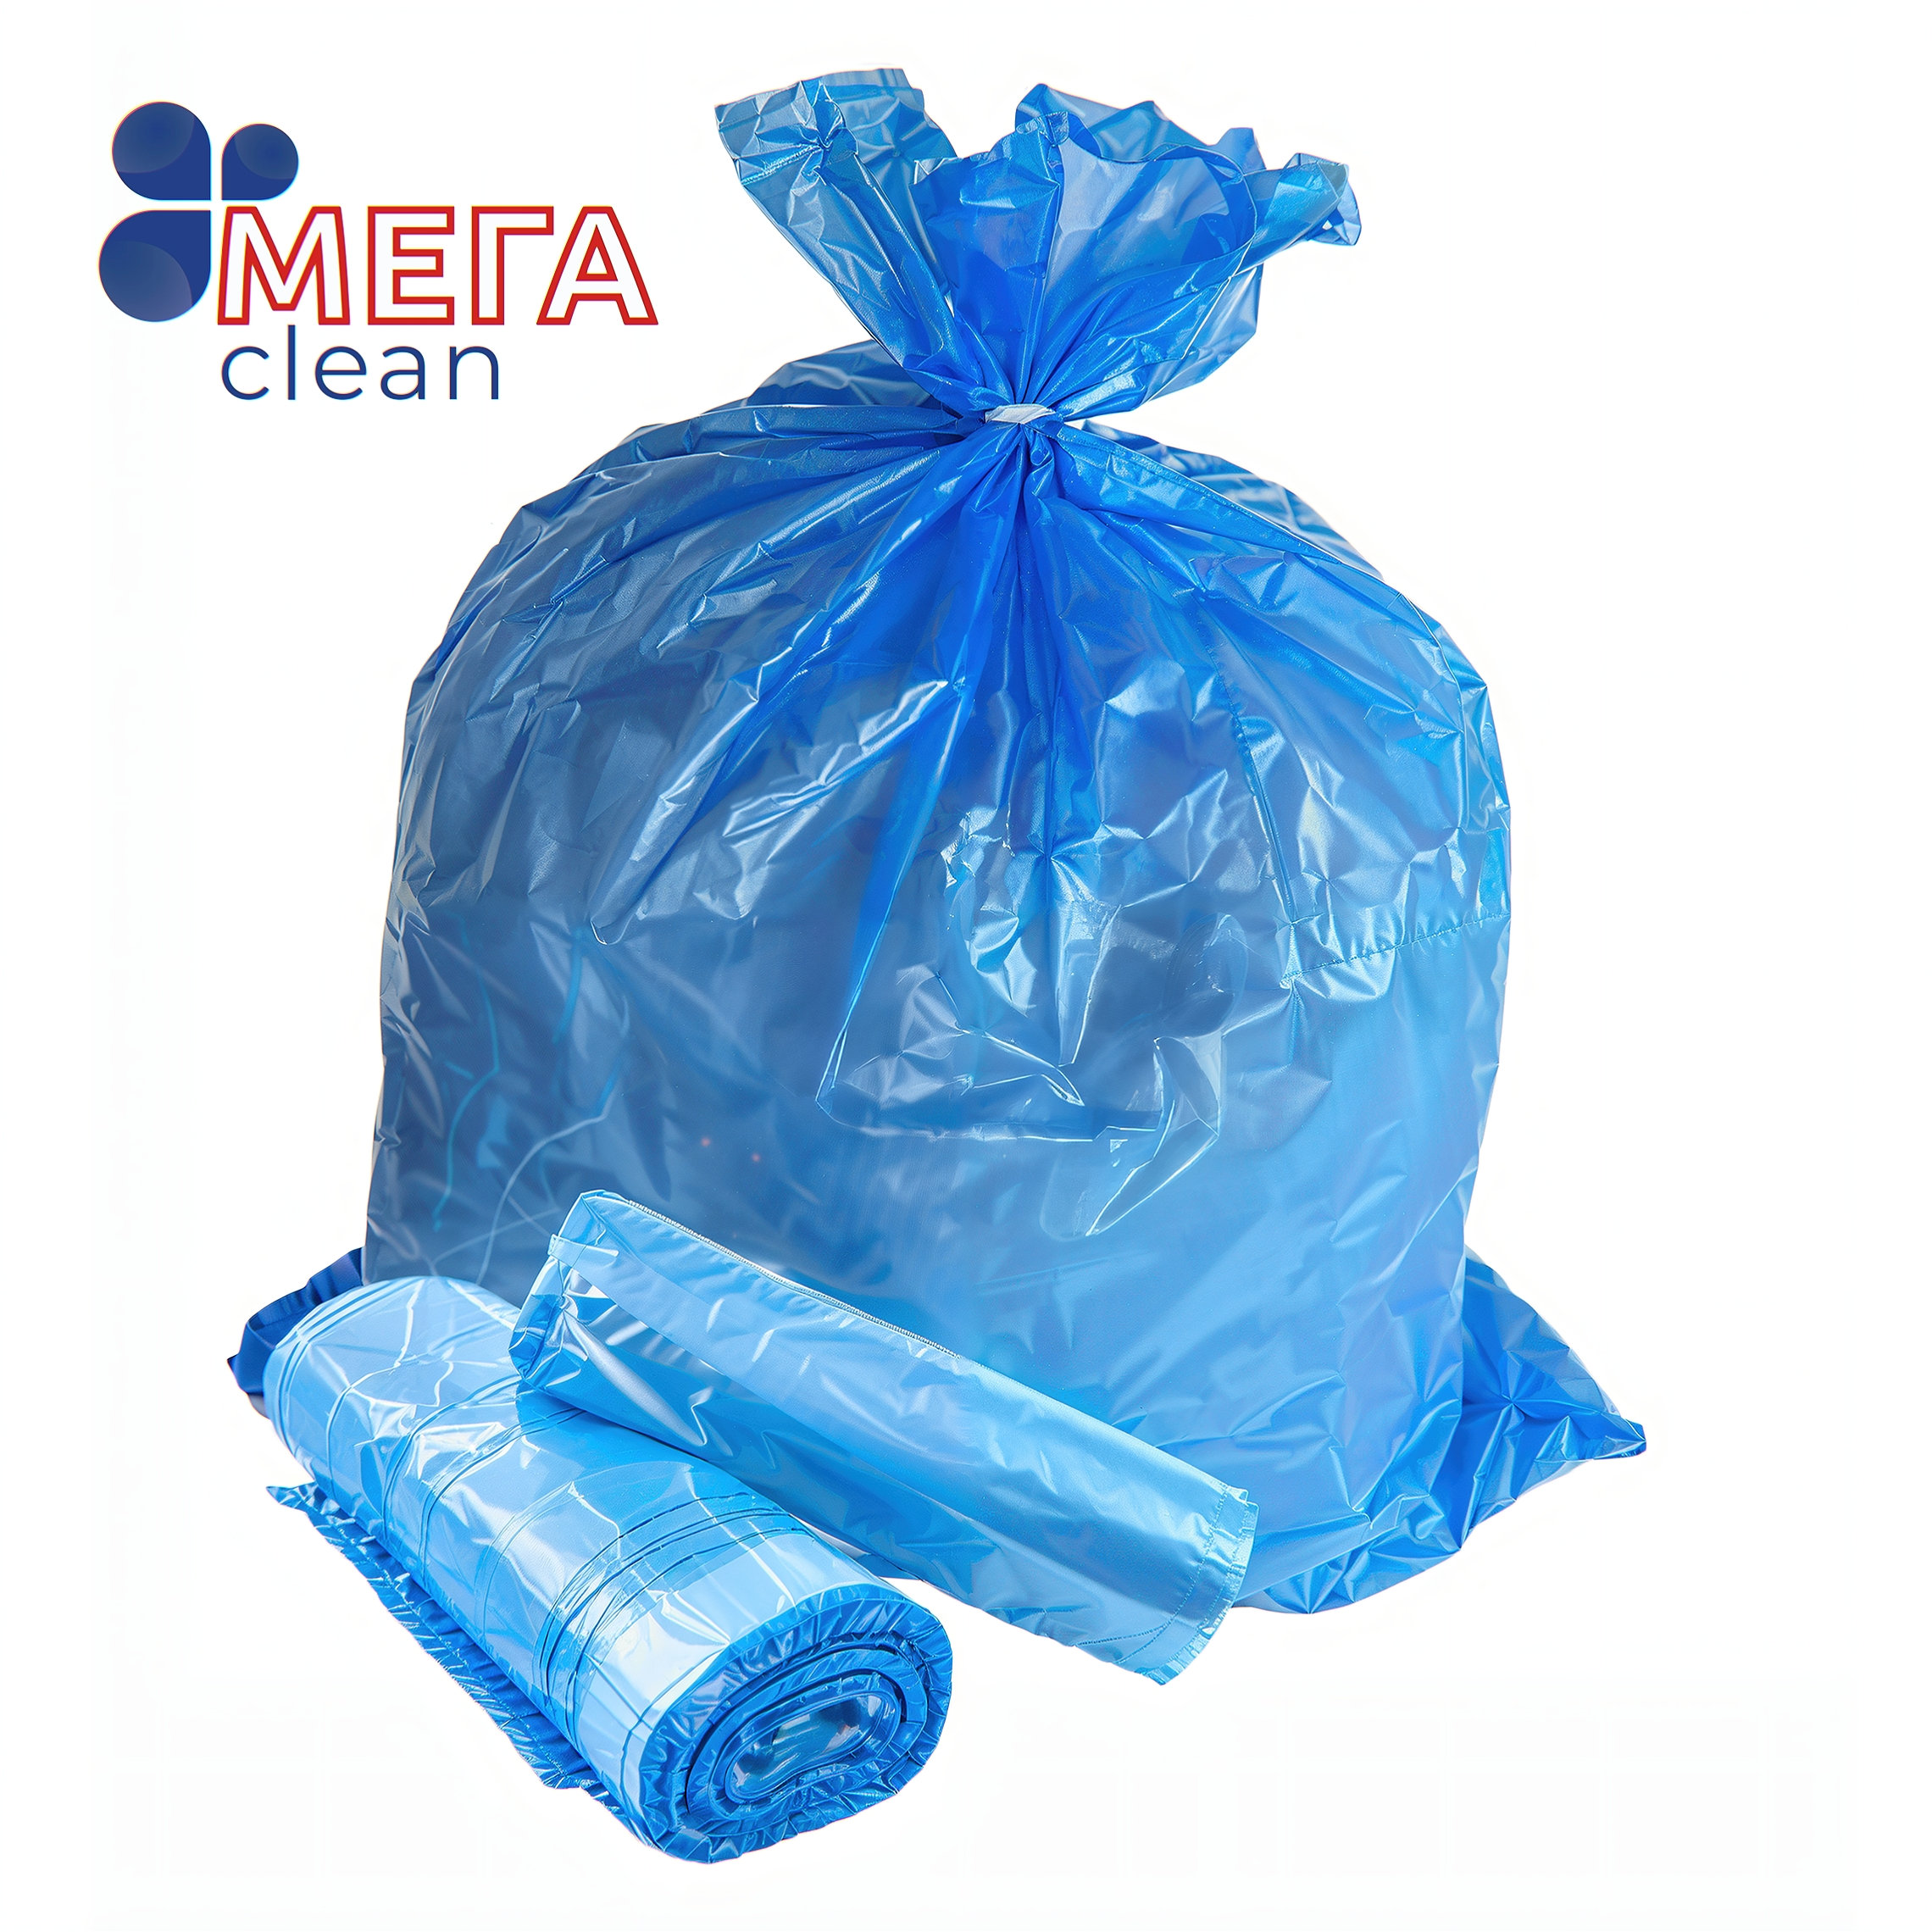 Купить Пакет мусорный 30 л, ТМ «МЕГА CLEAN» оптом, в наличии и на заказ